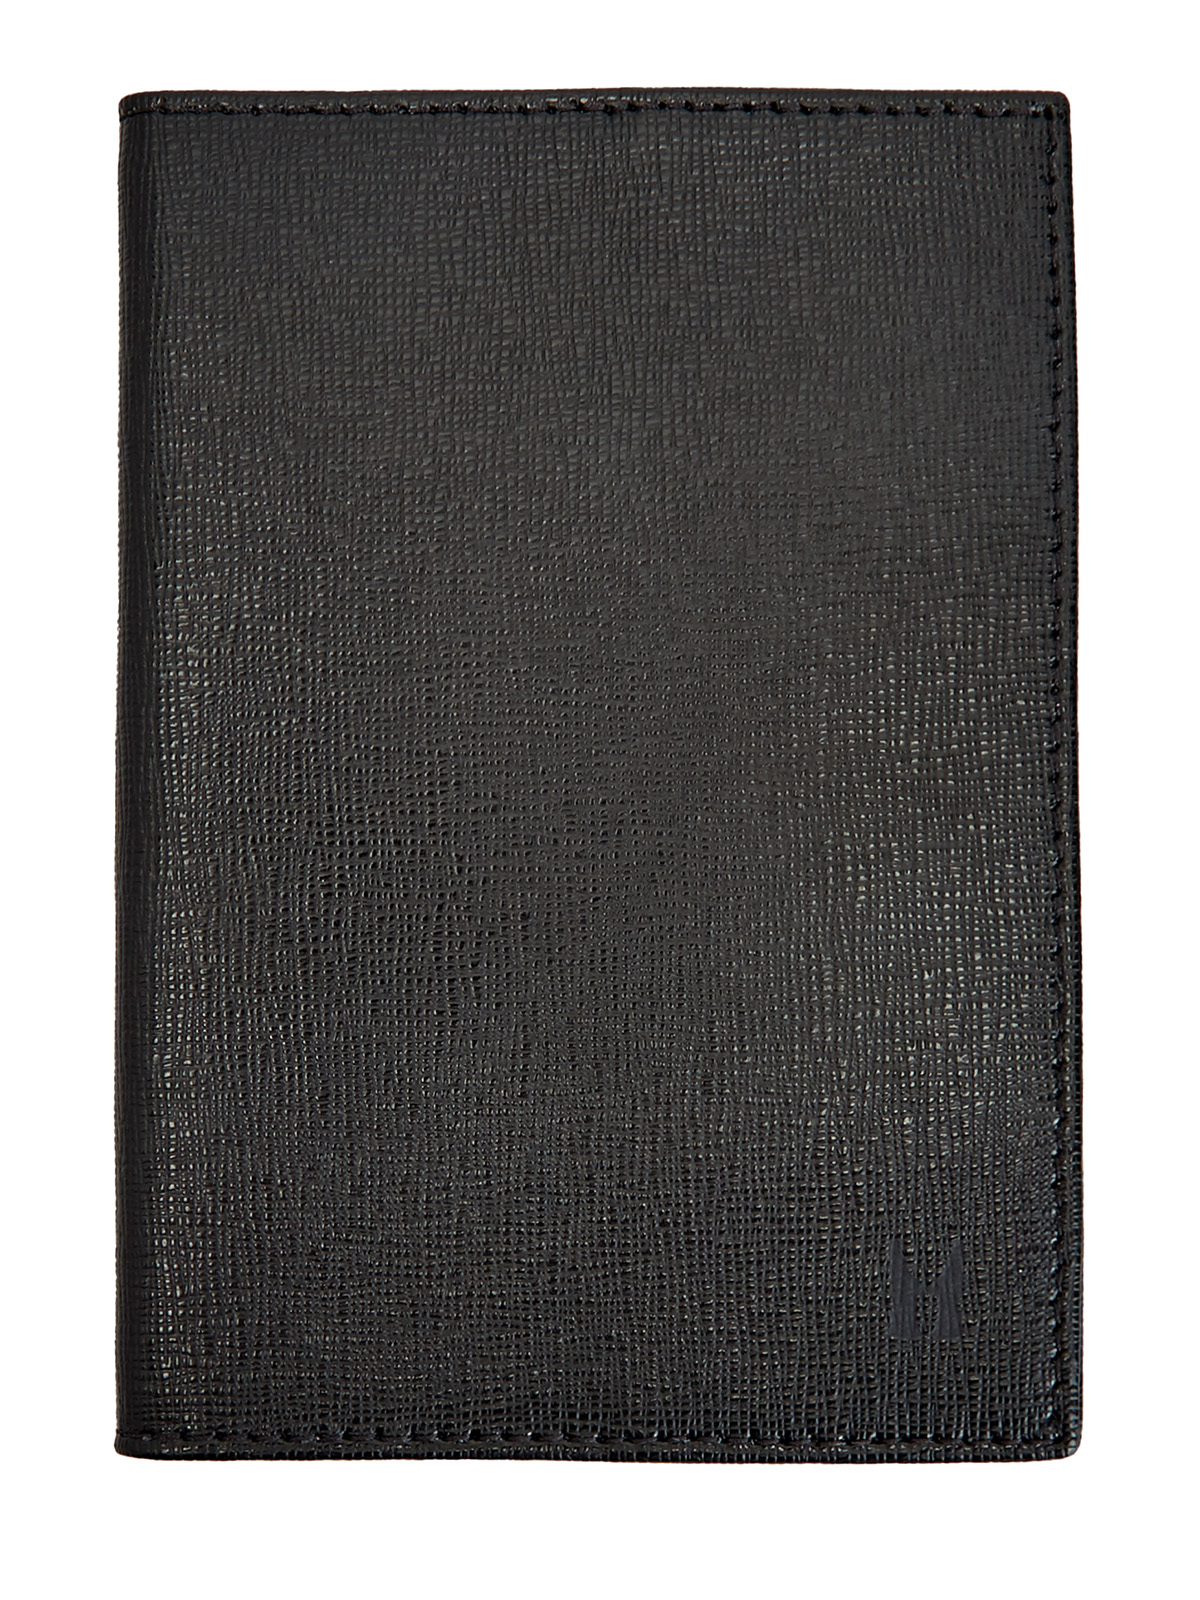 Обложка для паспорта из кожи с сафьяновой отделкой MORESCHI, цвет черный, размер M;L;XL - фото 1